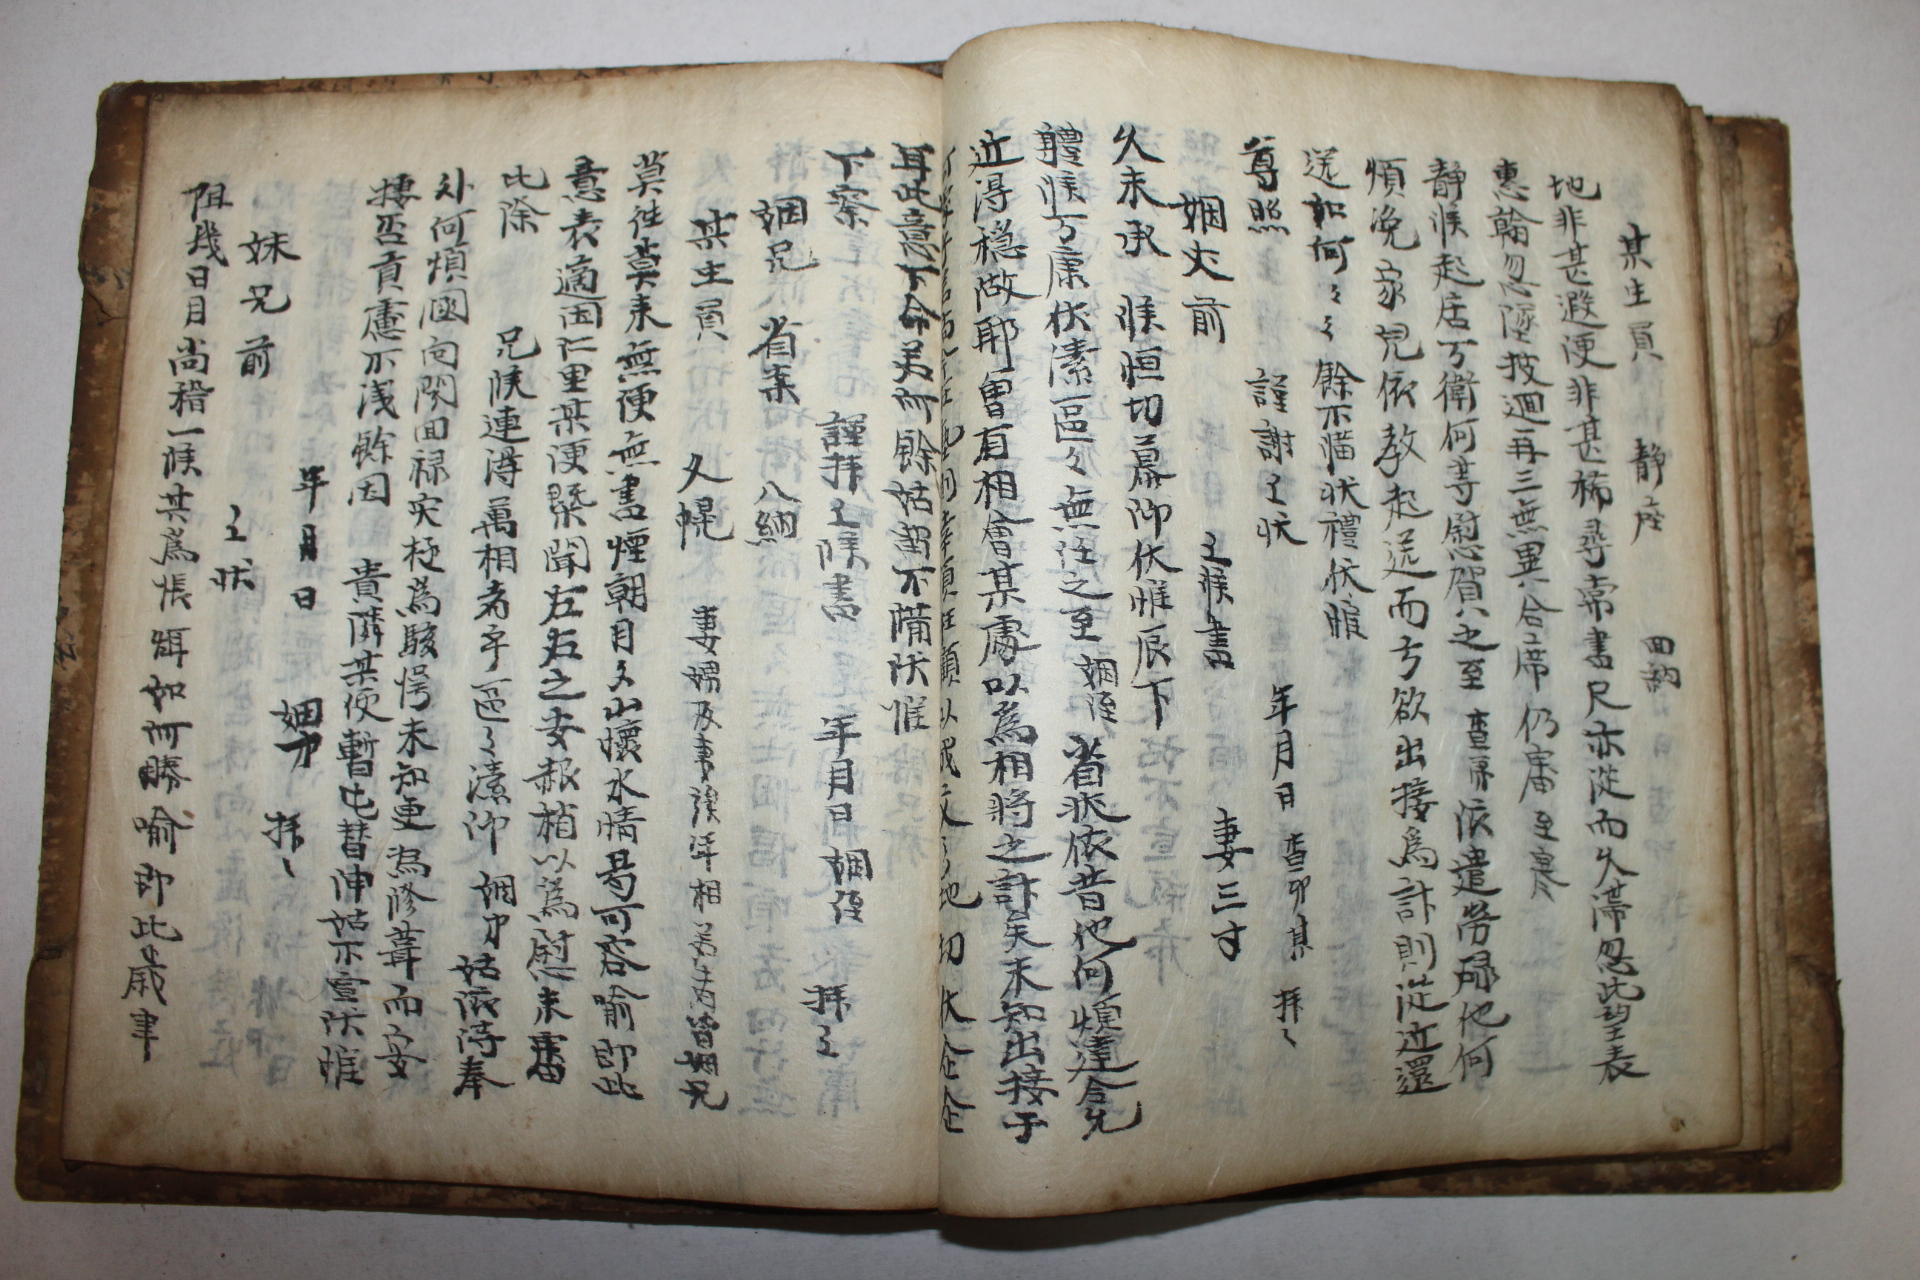 조선시대 필사본 예서장(禮書帳)